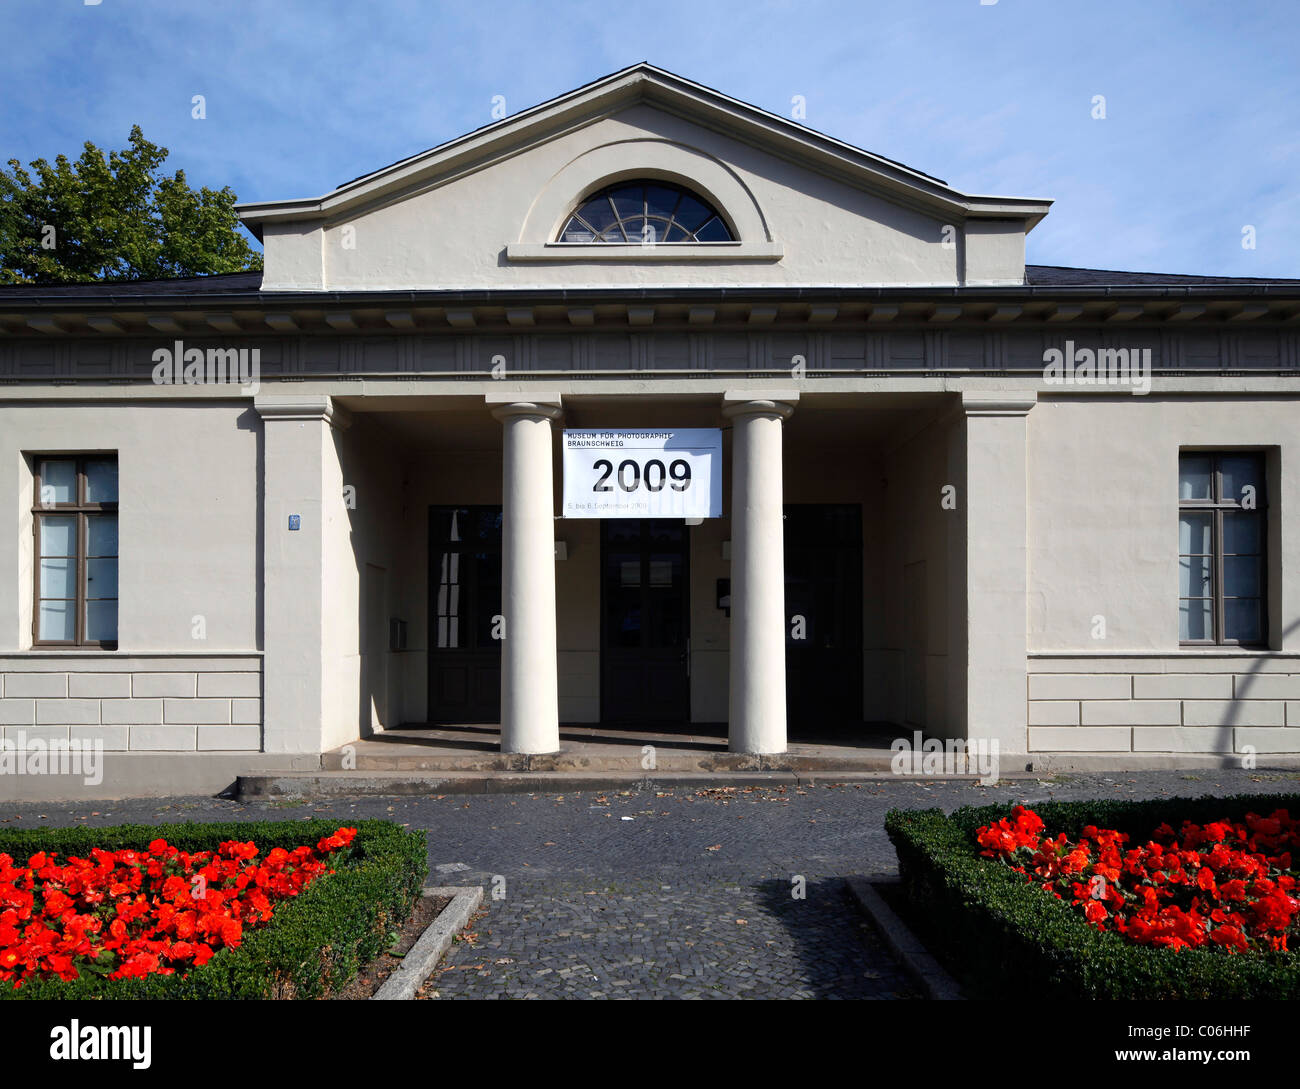 Ancien poste de douanes, d'un musée pour la photographie, Braunschweig, Basse-Saxe, Allemagne, Europe Banque D'Images